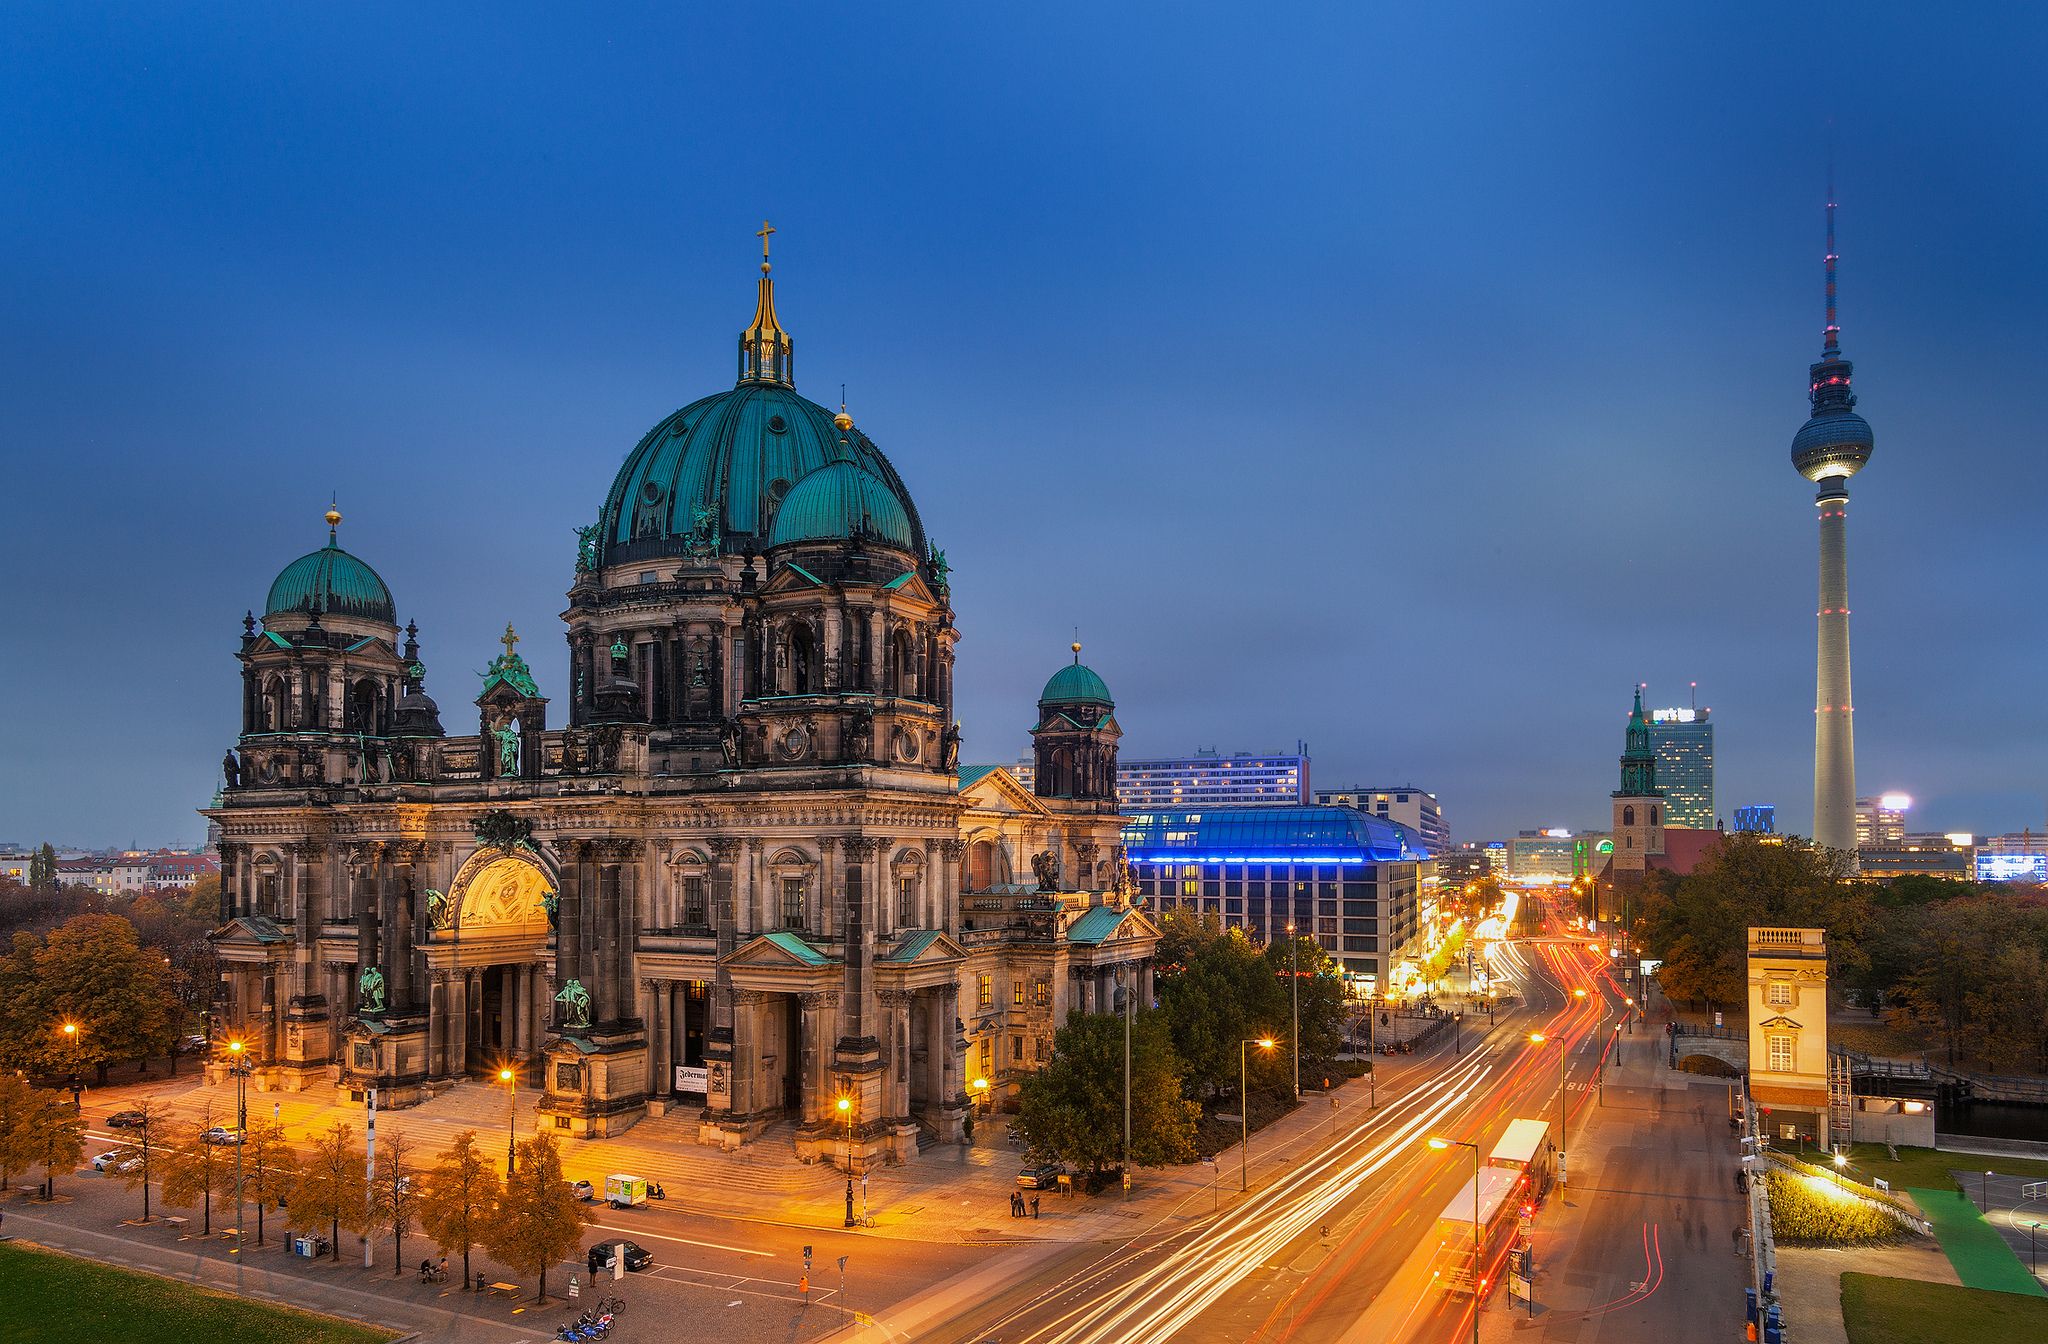 Berlin, Berlin, Germany, Germany, Berliner Dom, Berlin - Lustgarten , HD Wallpaper & Backgrounds